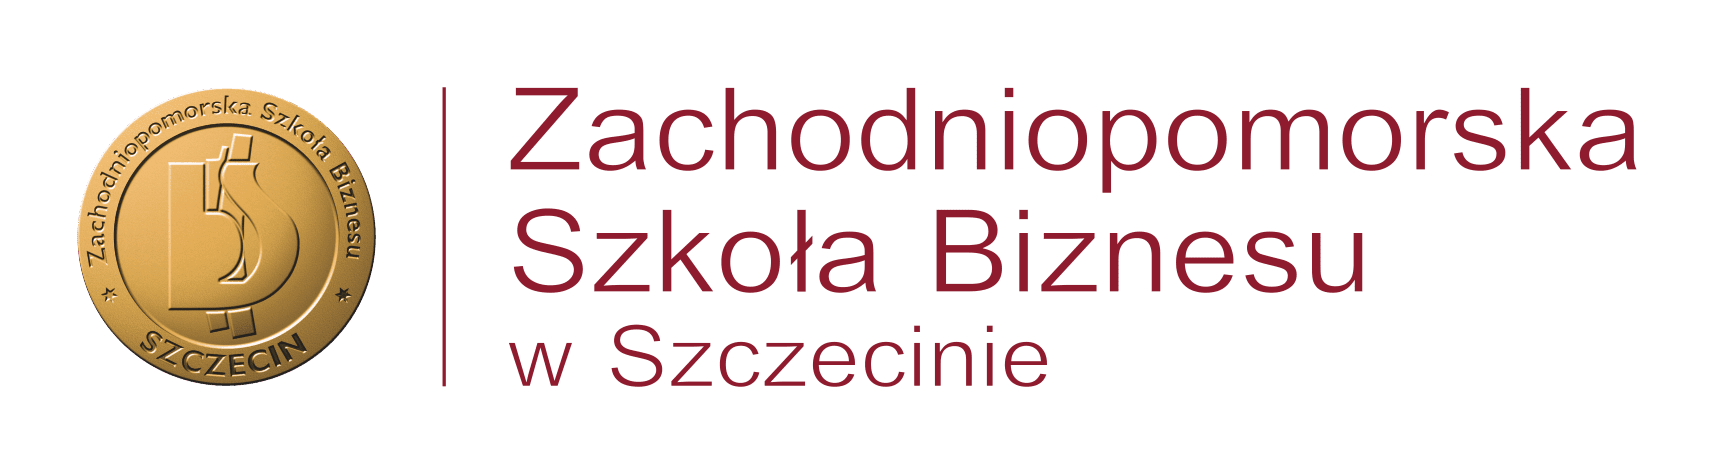 Zachodniopomorska Szkoła Biznesu w Szczecinie